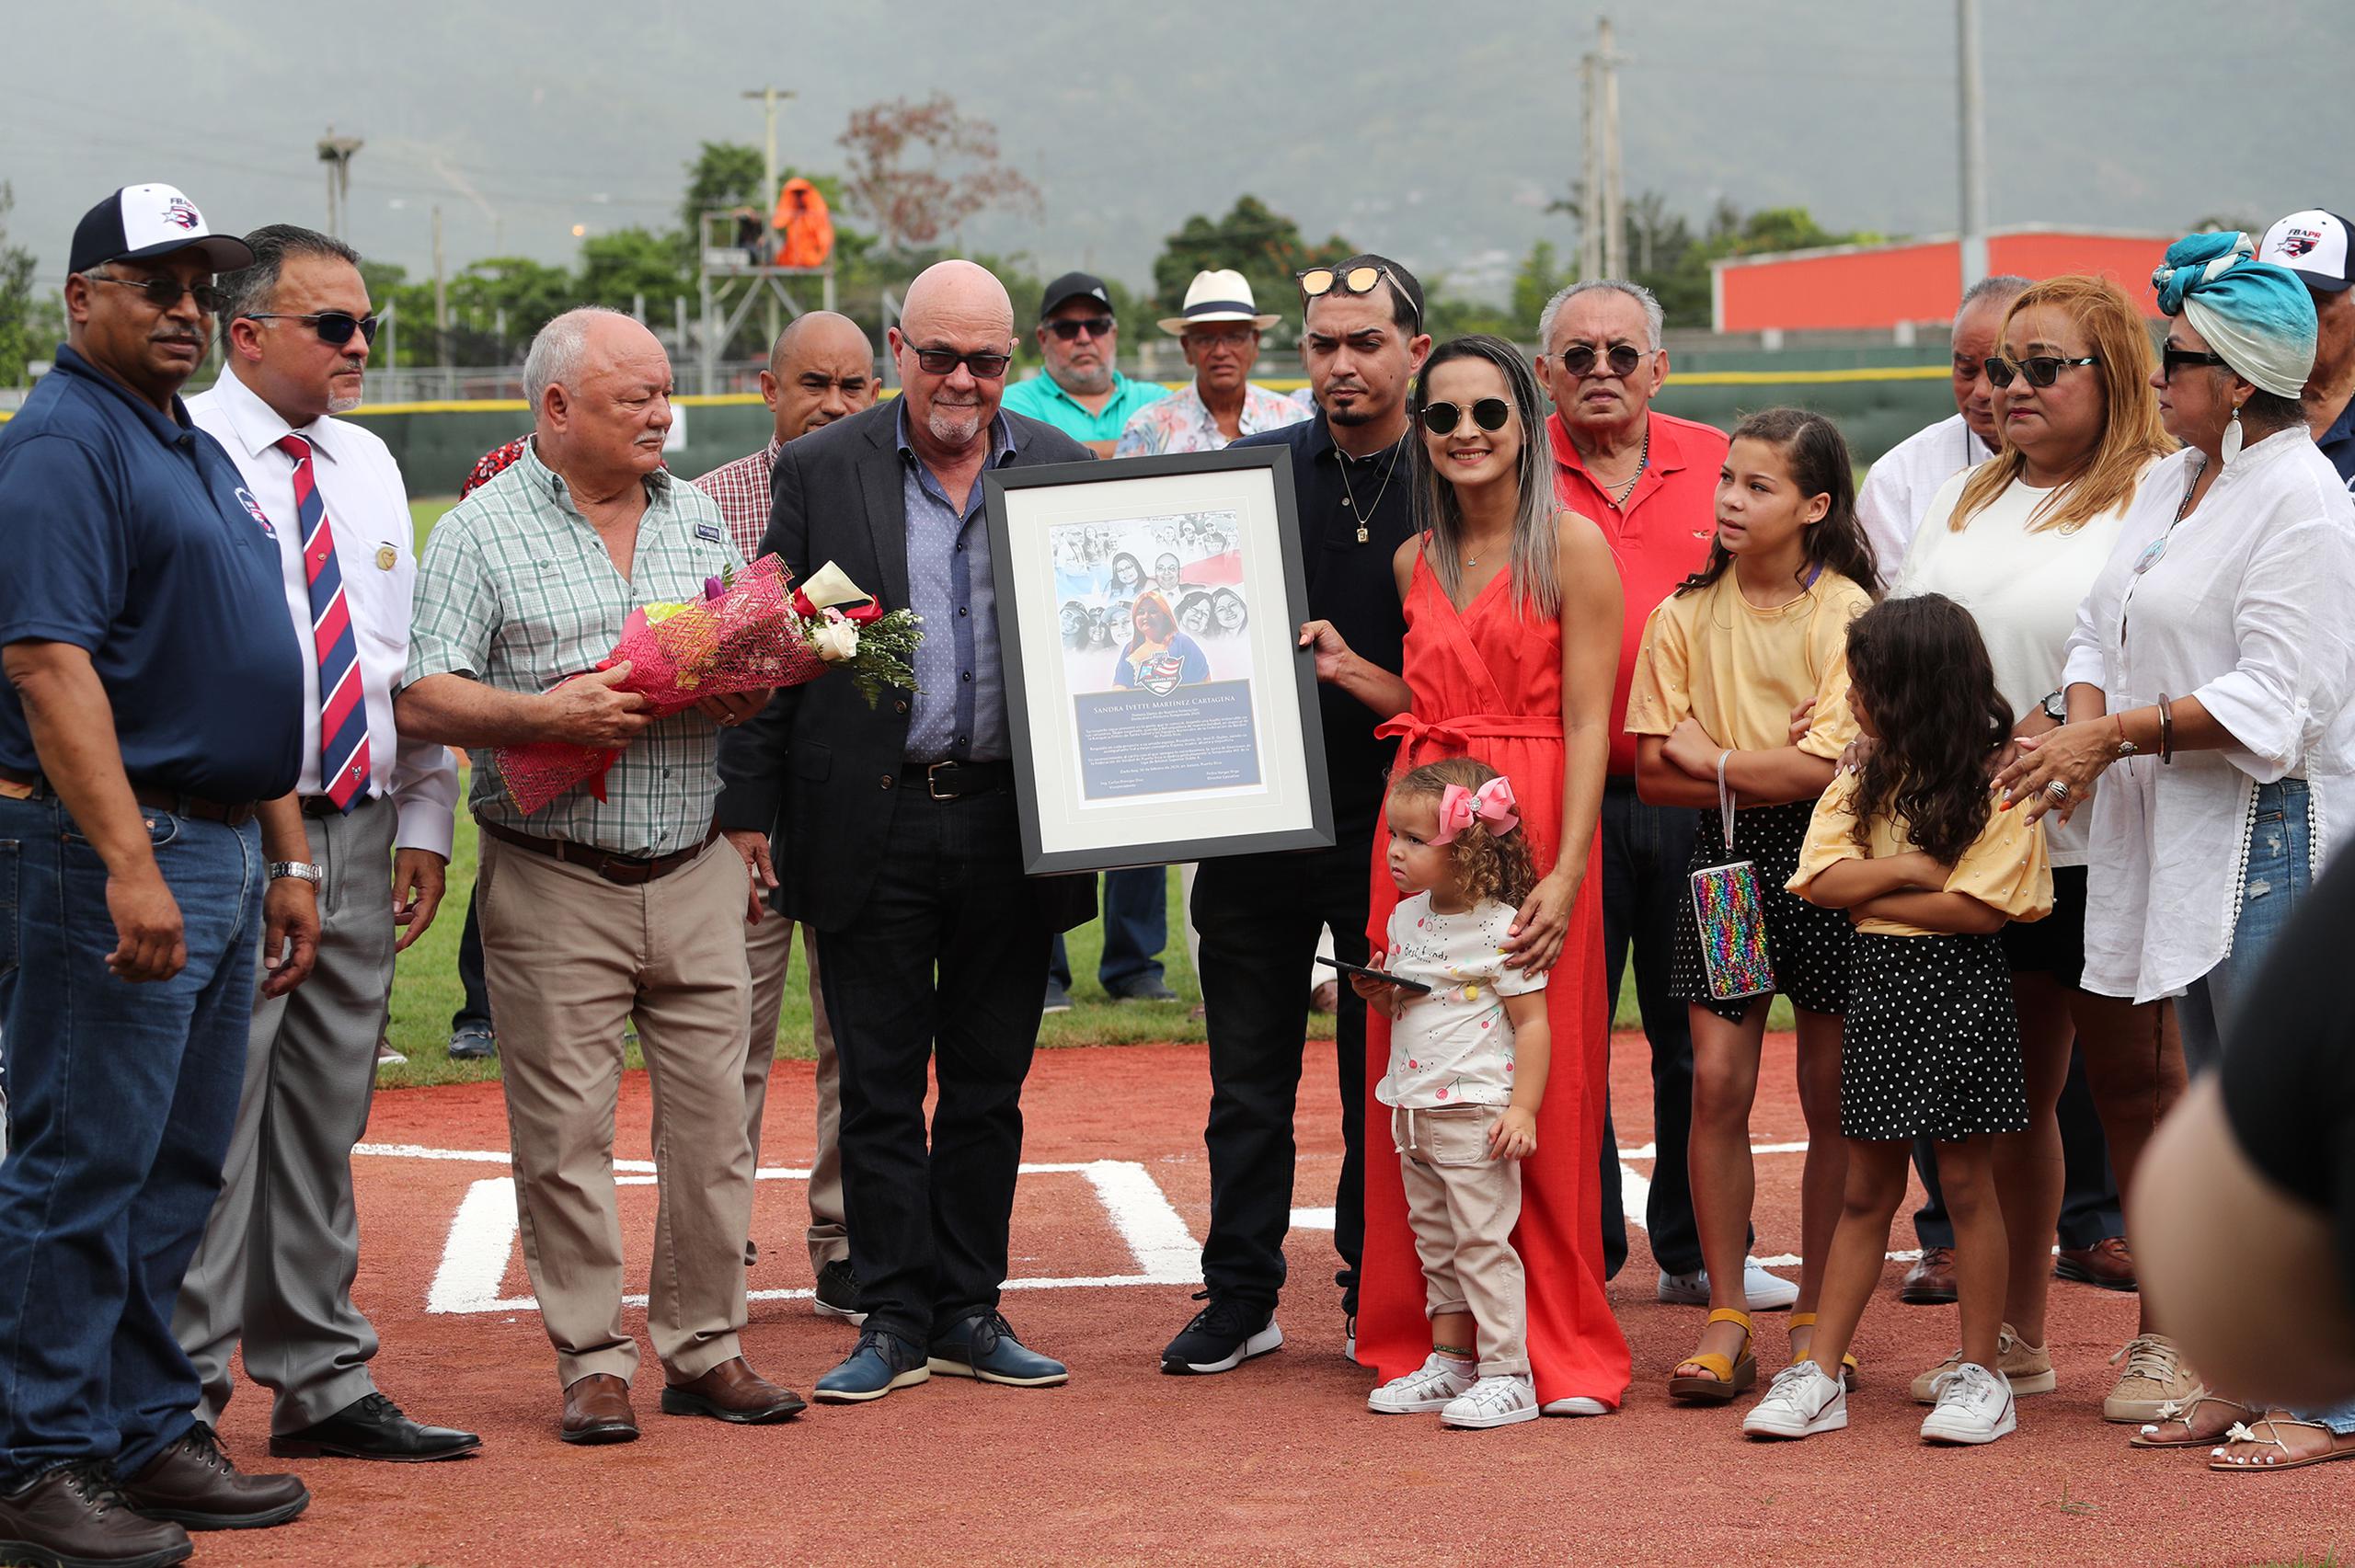 La temporada 2020 de la pelota Doble A le fue dedicada póstumamente a Sandra I. Martínez, esposa del presidente de la Federación de Béisbol de Puerto Rico, Dr. José Quiles, quien falleció en julio pasado.